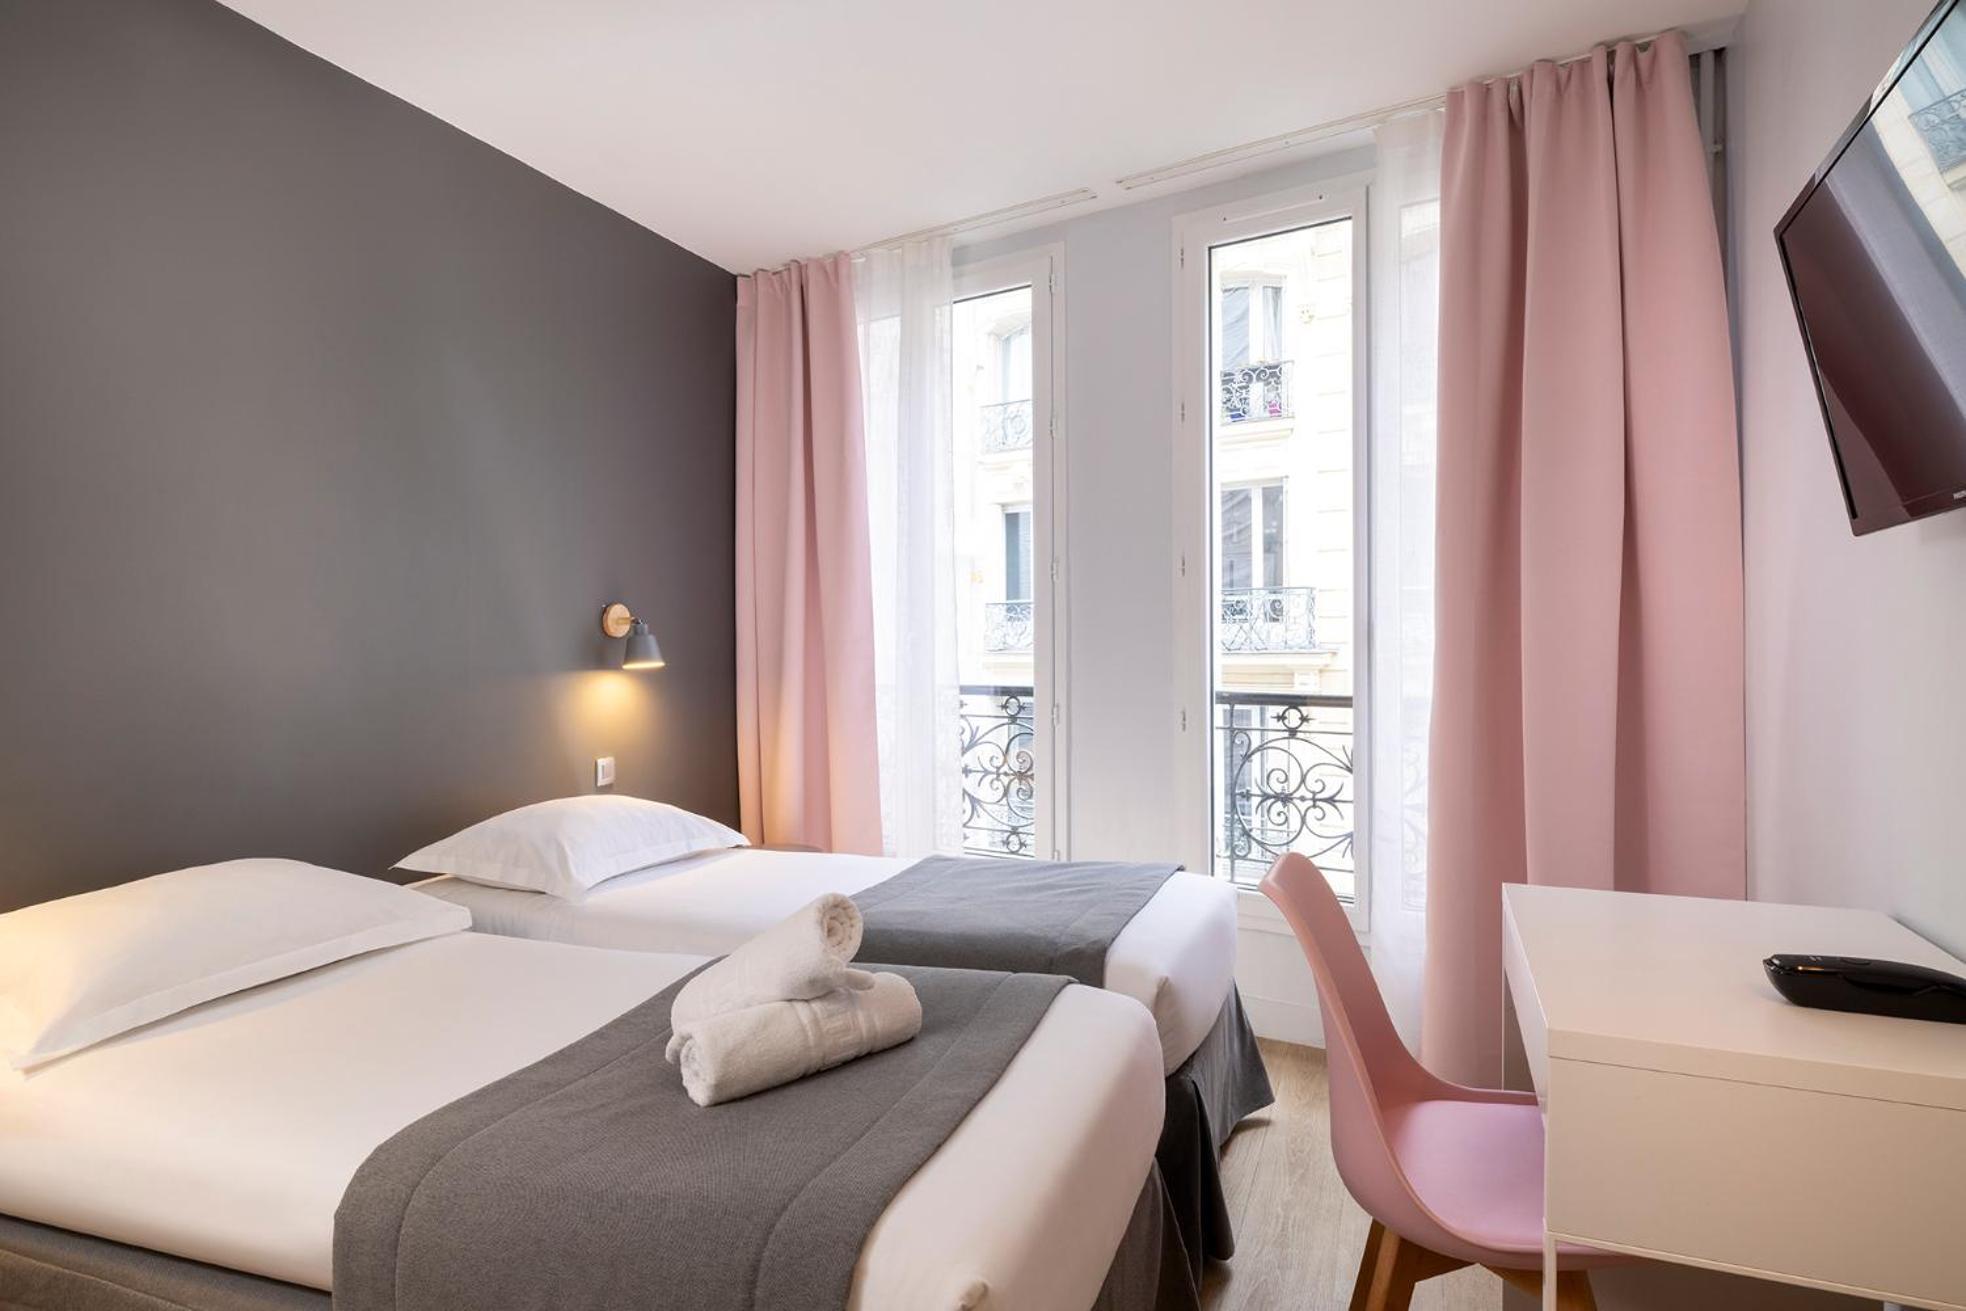 Hotel Paris Legendre Exteriér fotografie